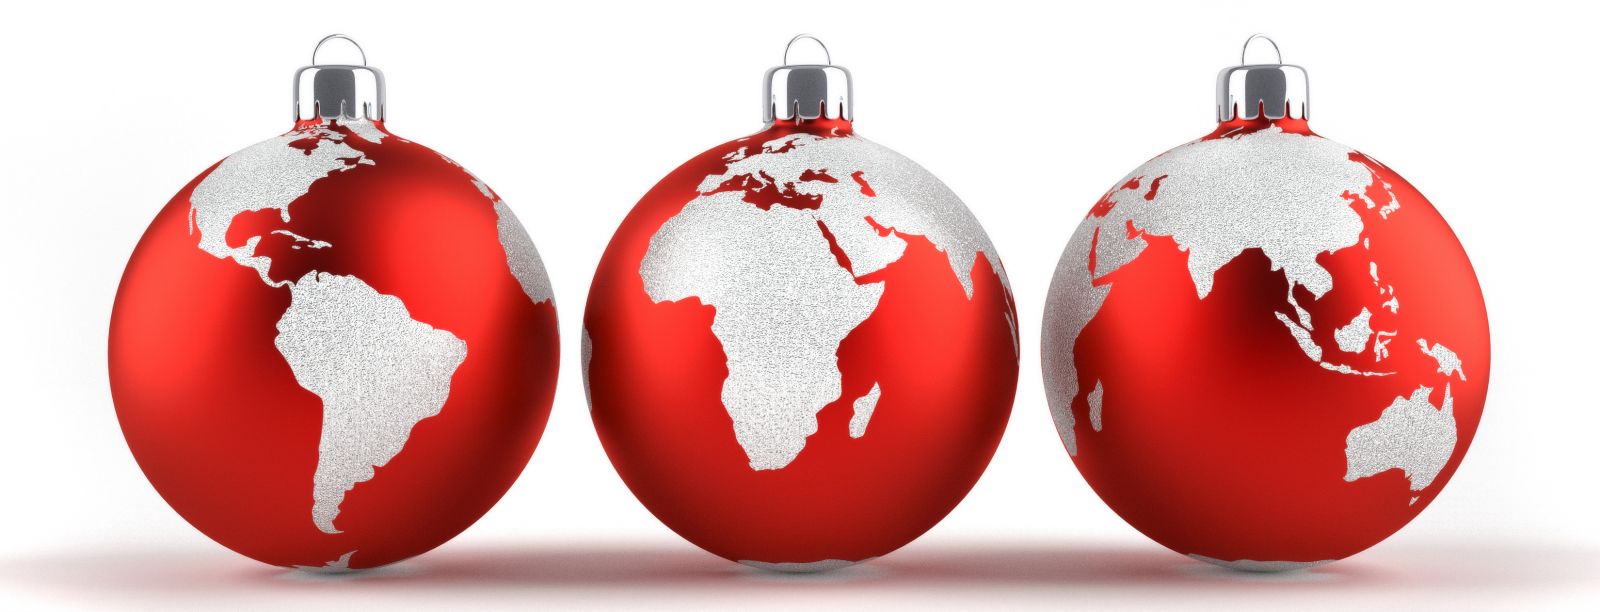 El mundo y Canadá ya vive y disfruta la llegada de a Navidad 